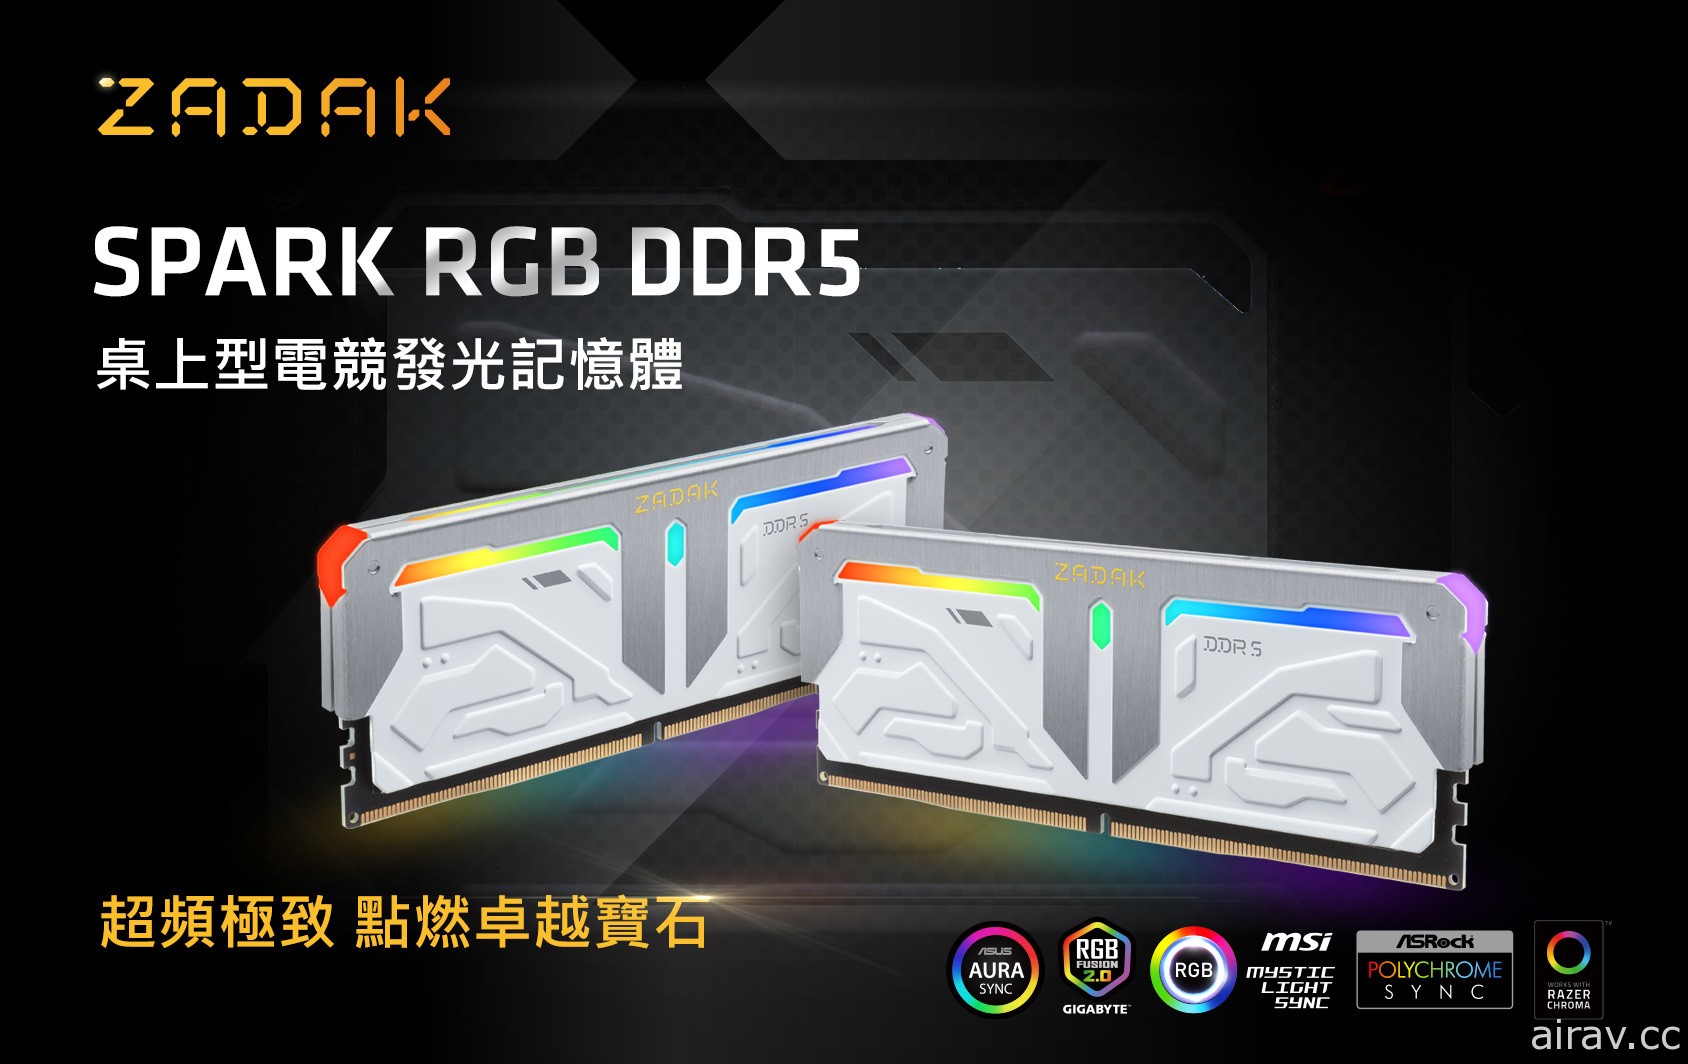 宇瞻推出 SPARK RGB DDR5 超频内存